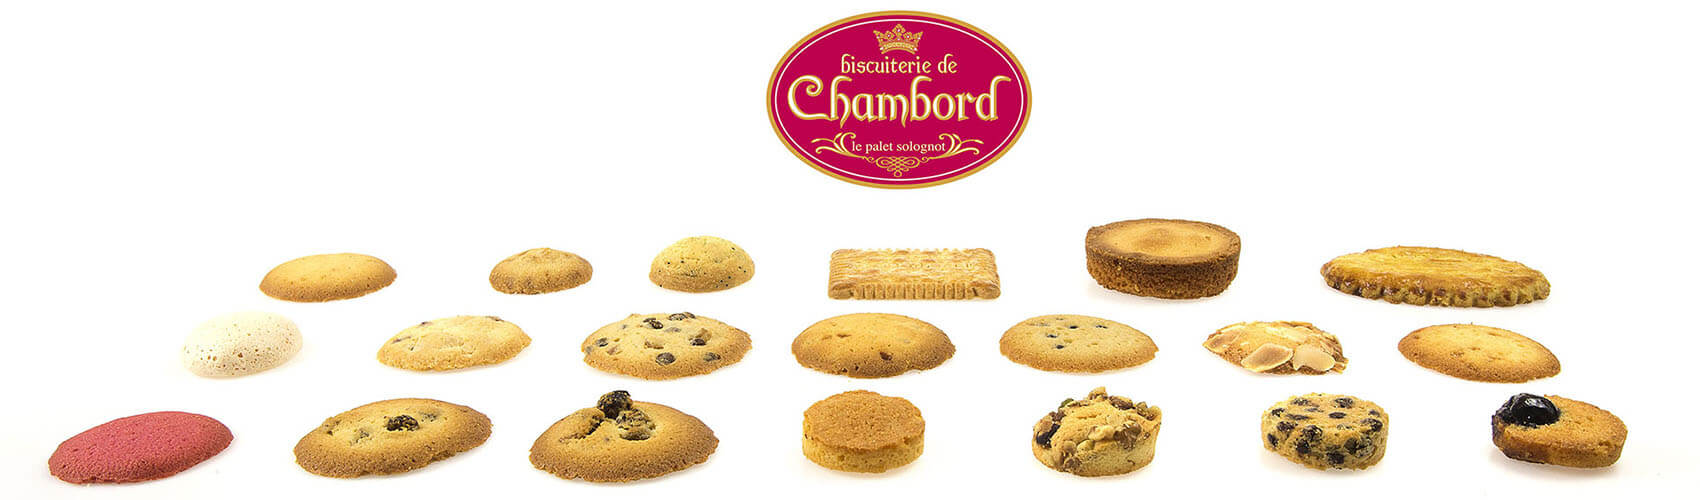 biscuits de chambord